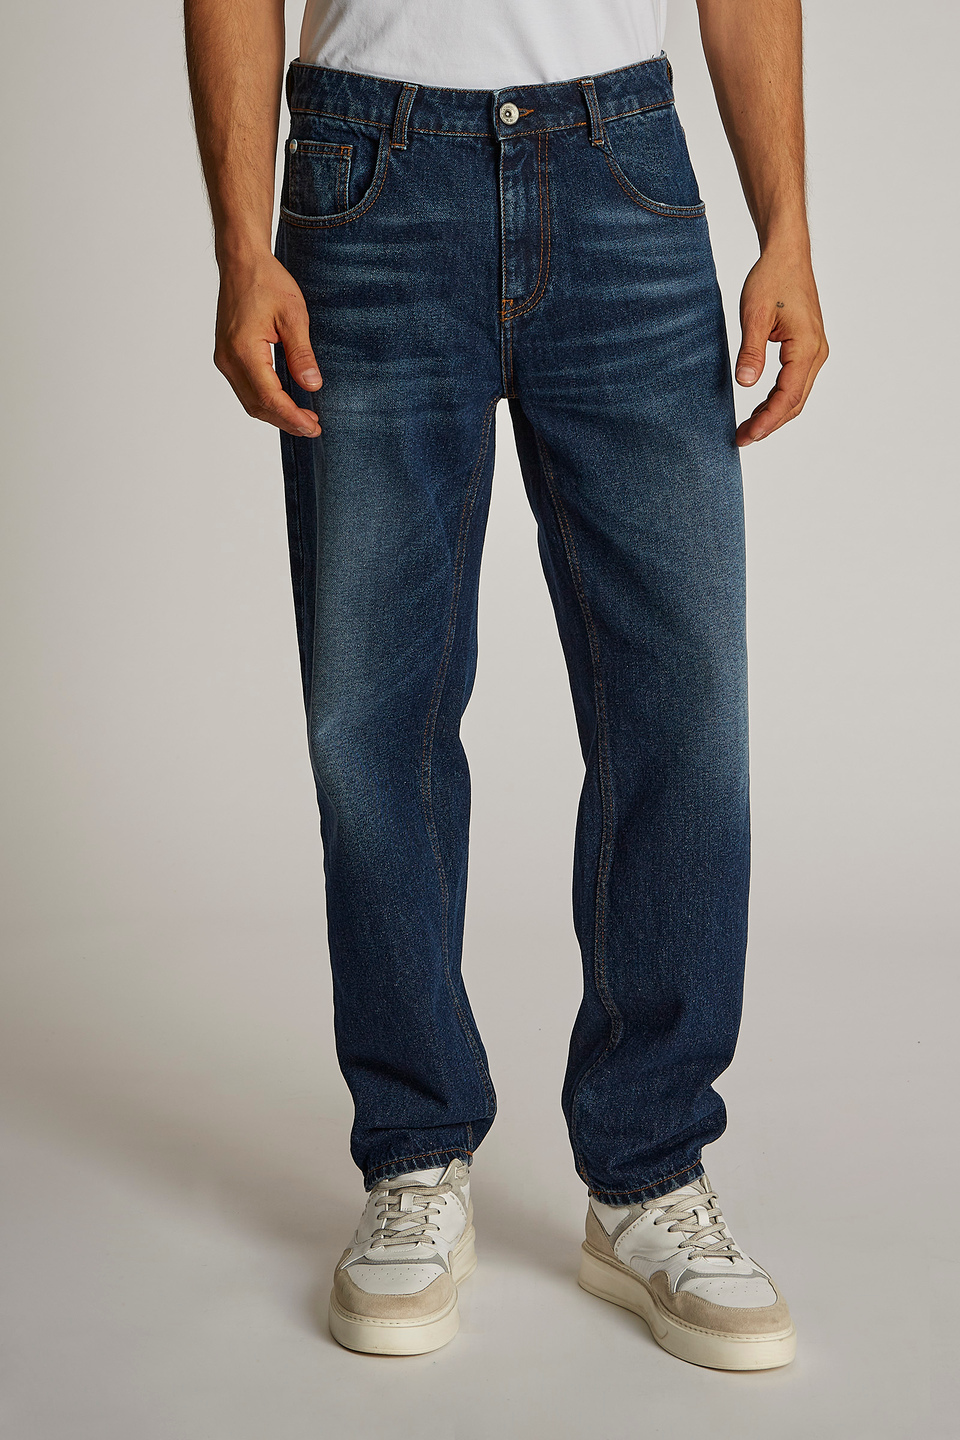 Stadium schroef Brood Men's regular-fit stretch cotton jeans Medium Indigo Denim La Martina |  Shop Online